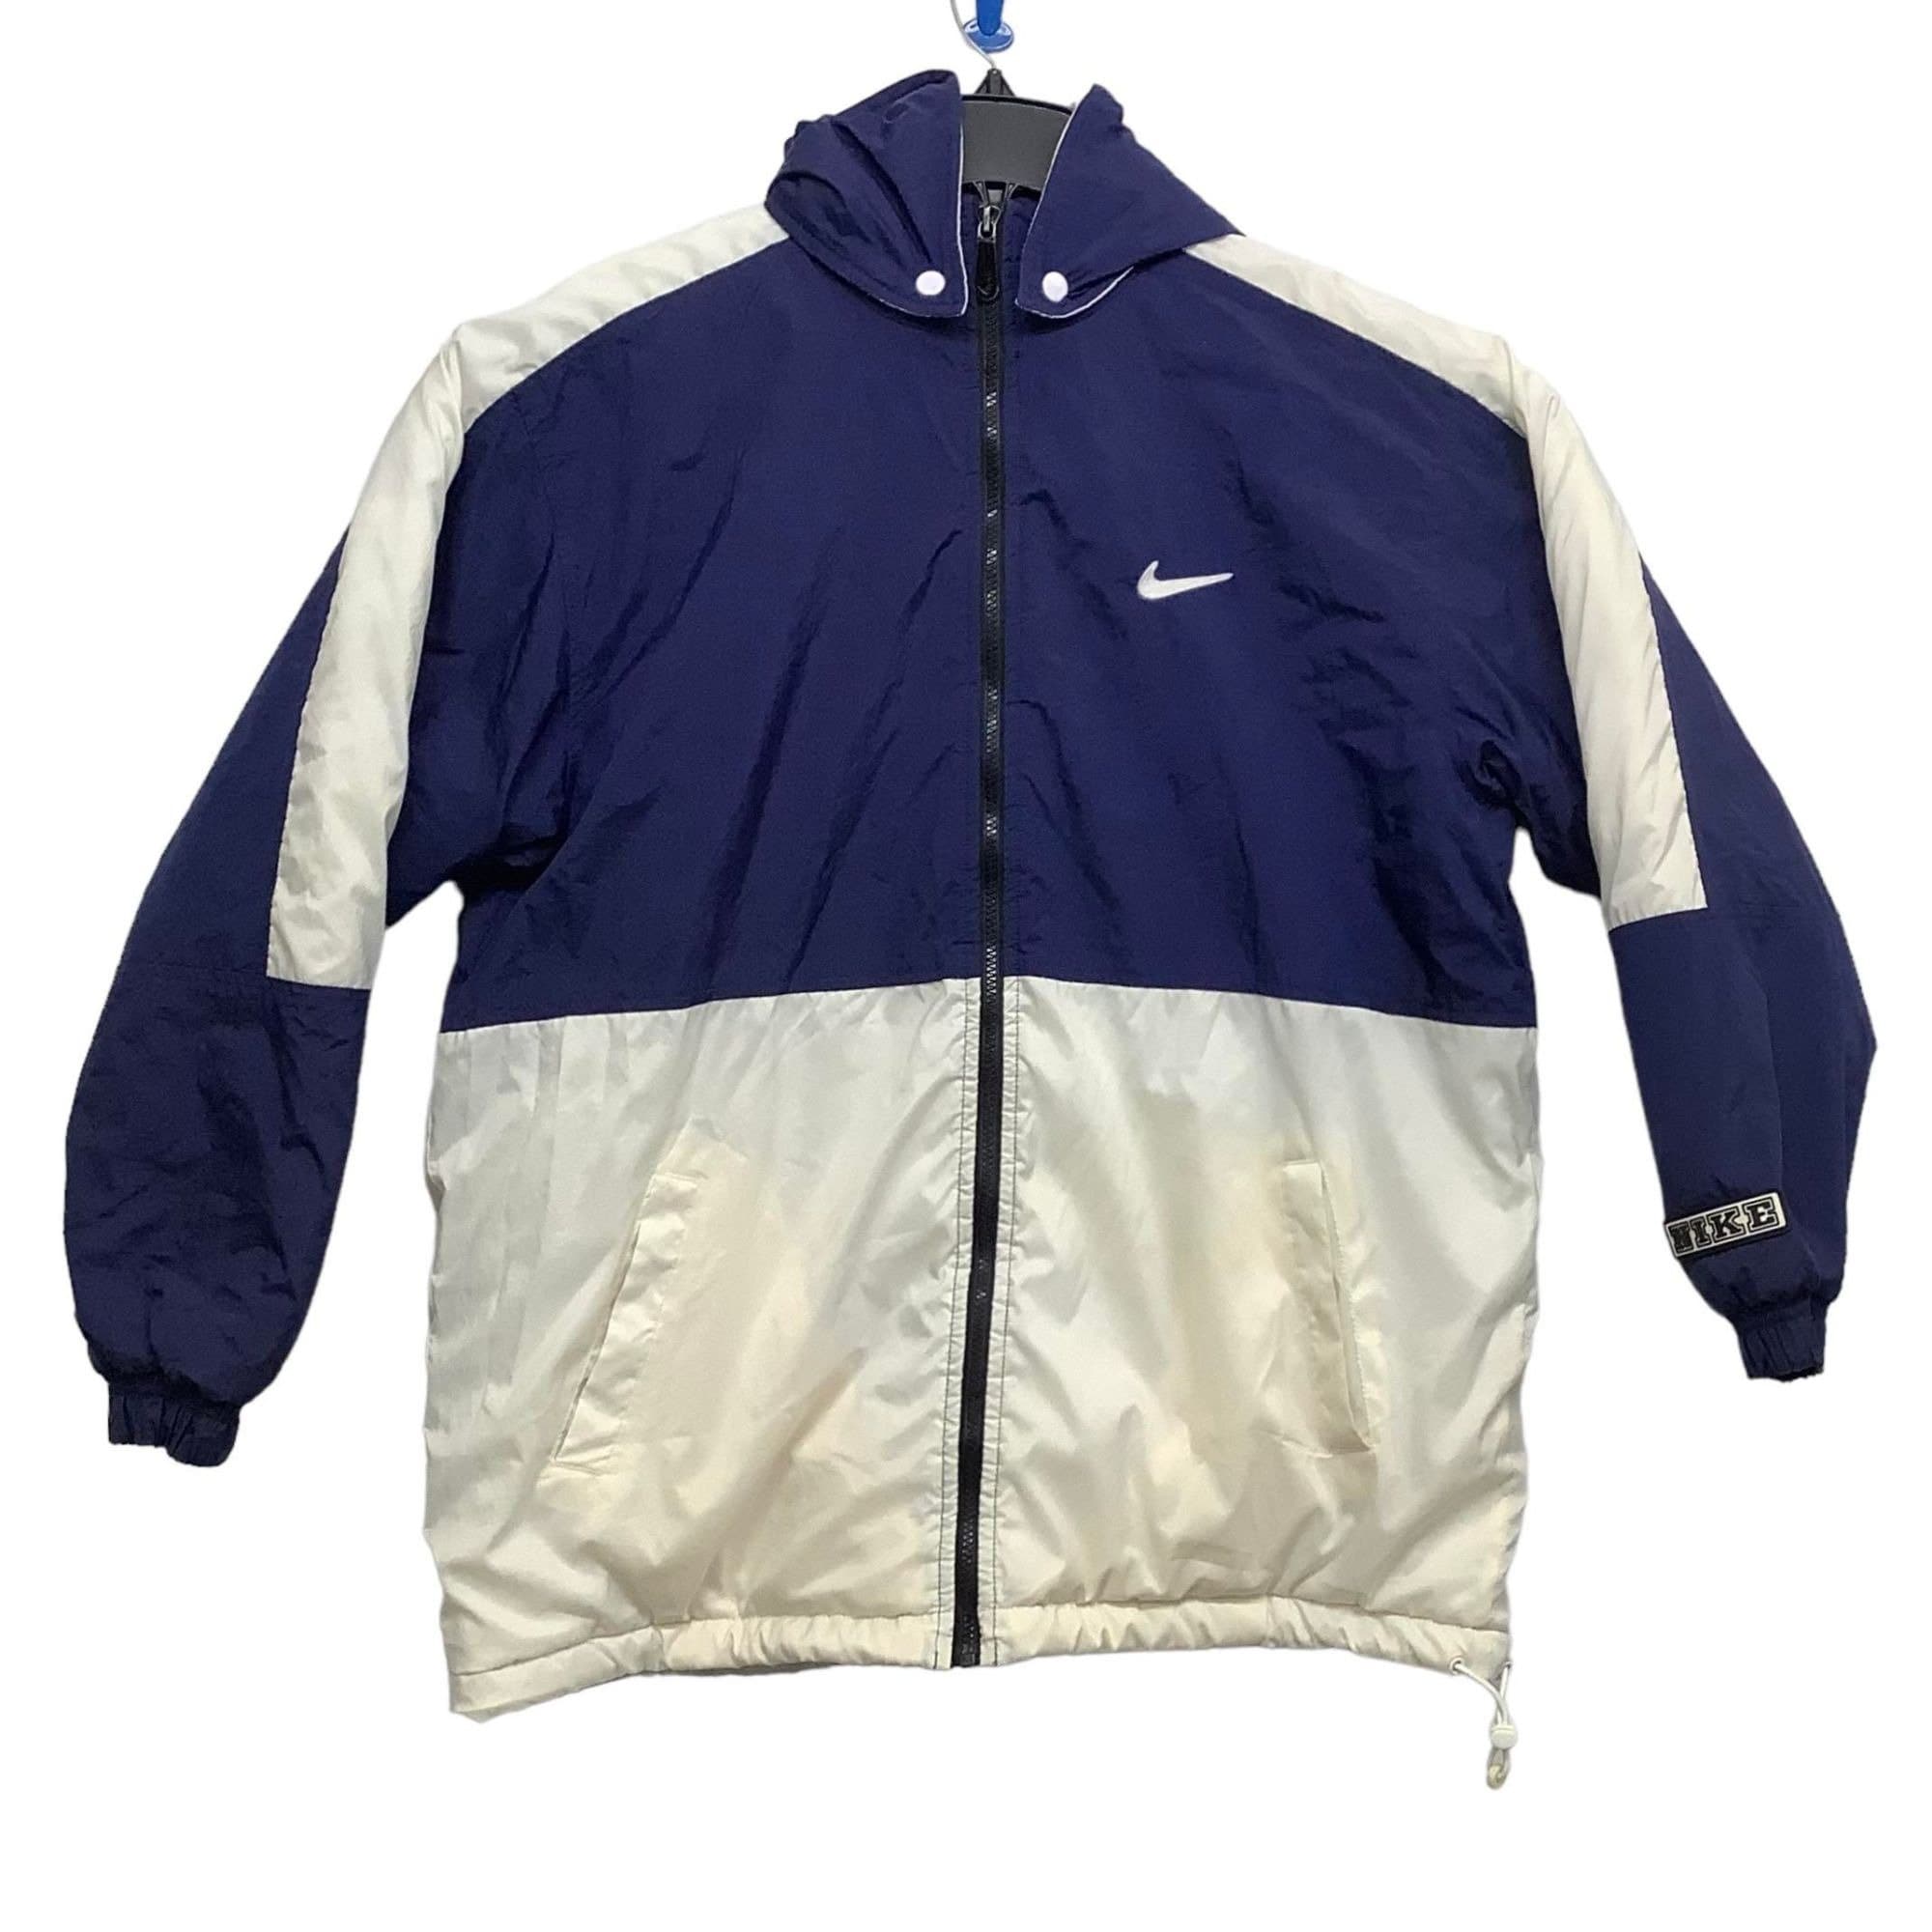 Nike Vintage Jacket - Etsy